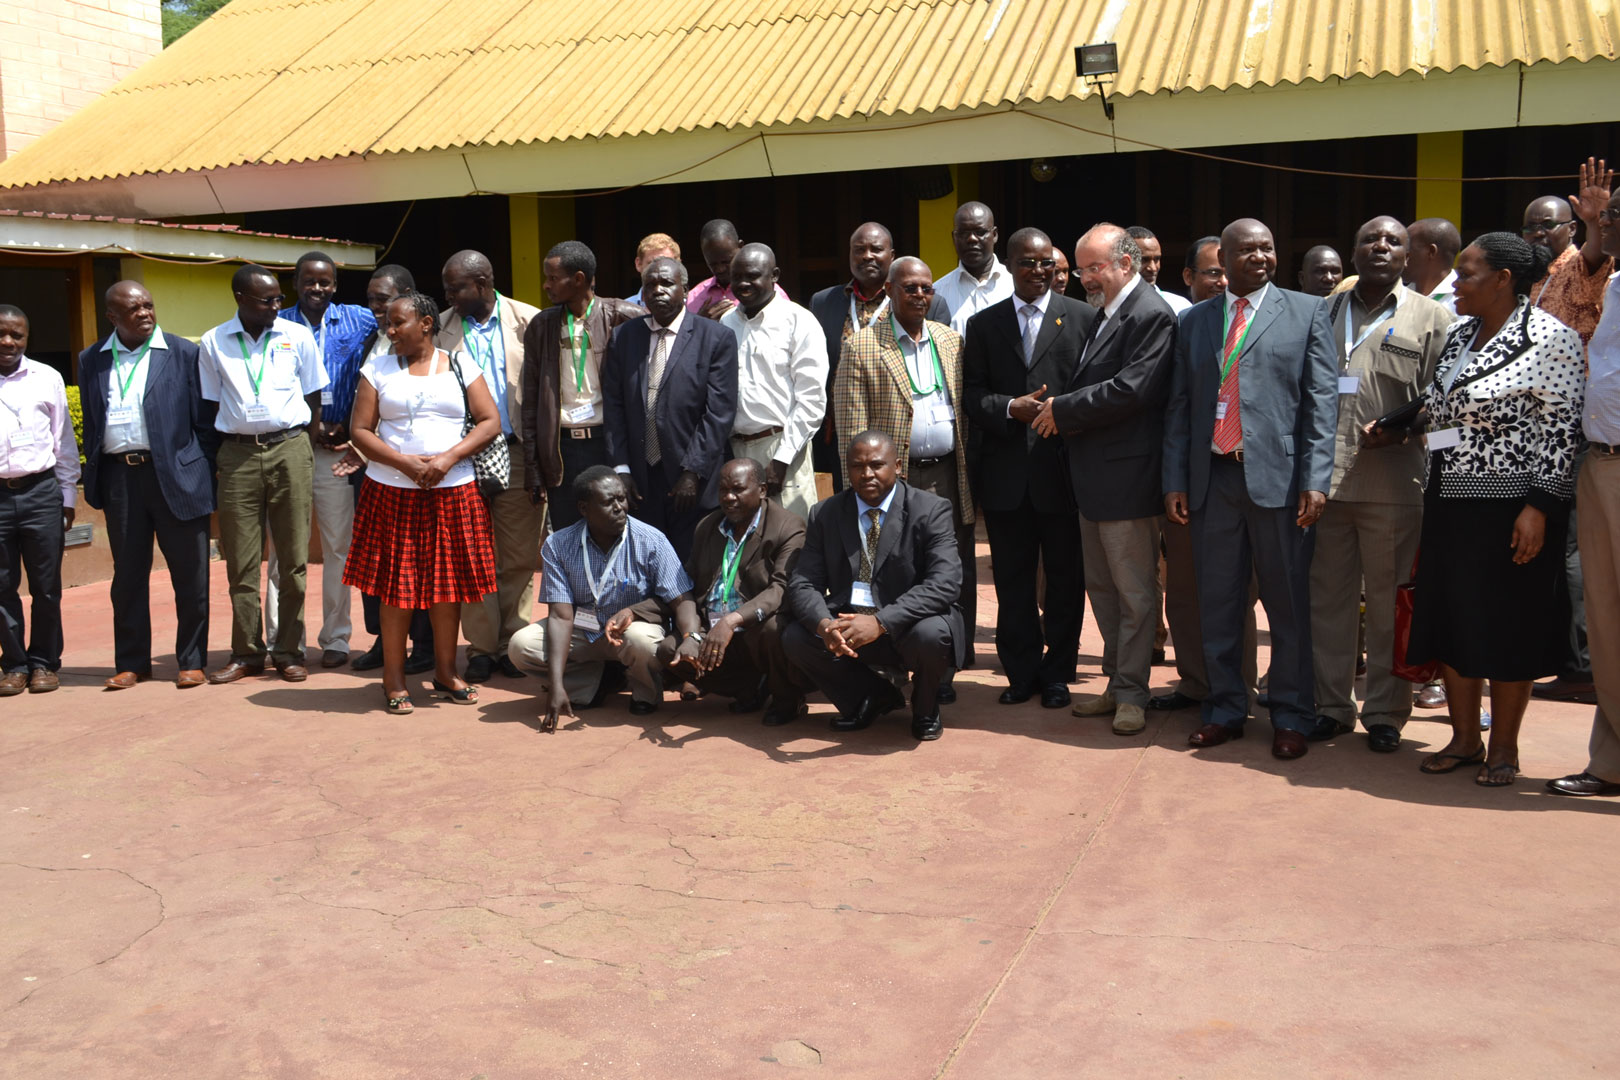  © 2015 AU-IBAR. Participants at the Trilateral Cross-border Meeting for Uganda, Kenya and South Sudan at Moroto, Uganda, 16th to 18th June 2015.